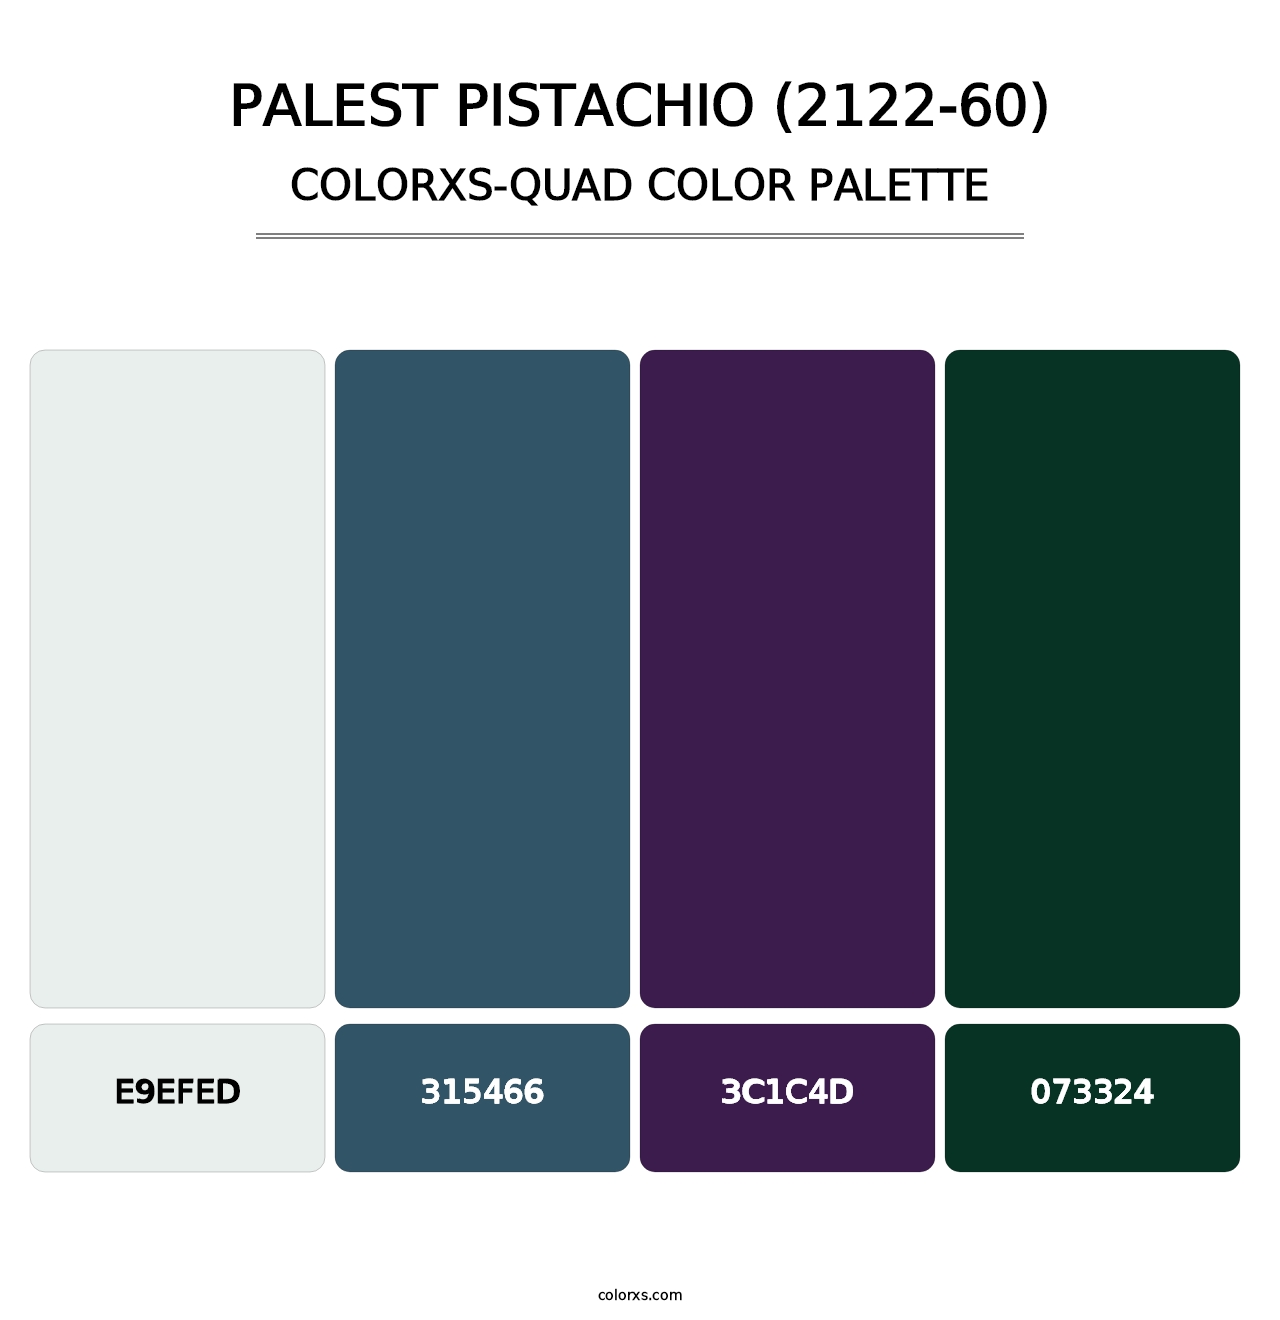 Palest Pistachio (2122-60) - Colorxs Quad Palette